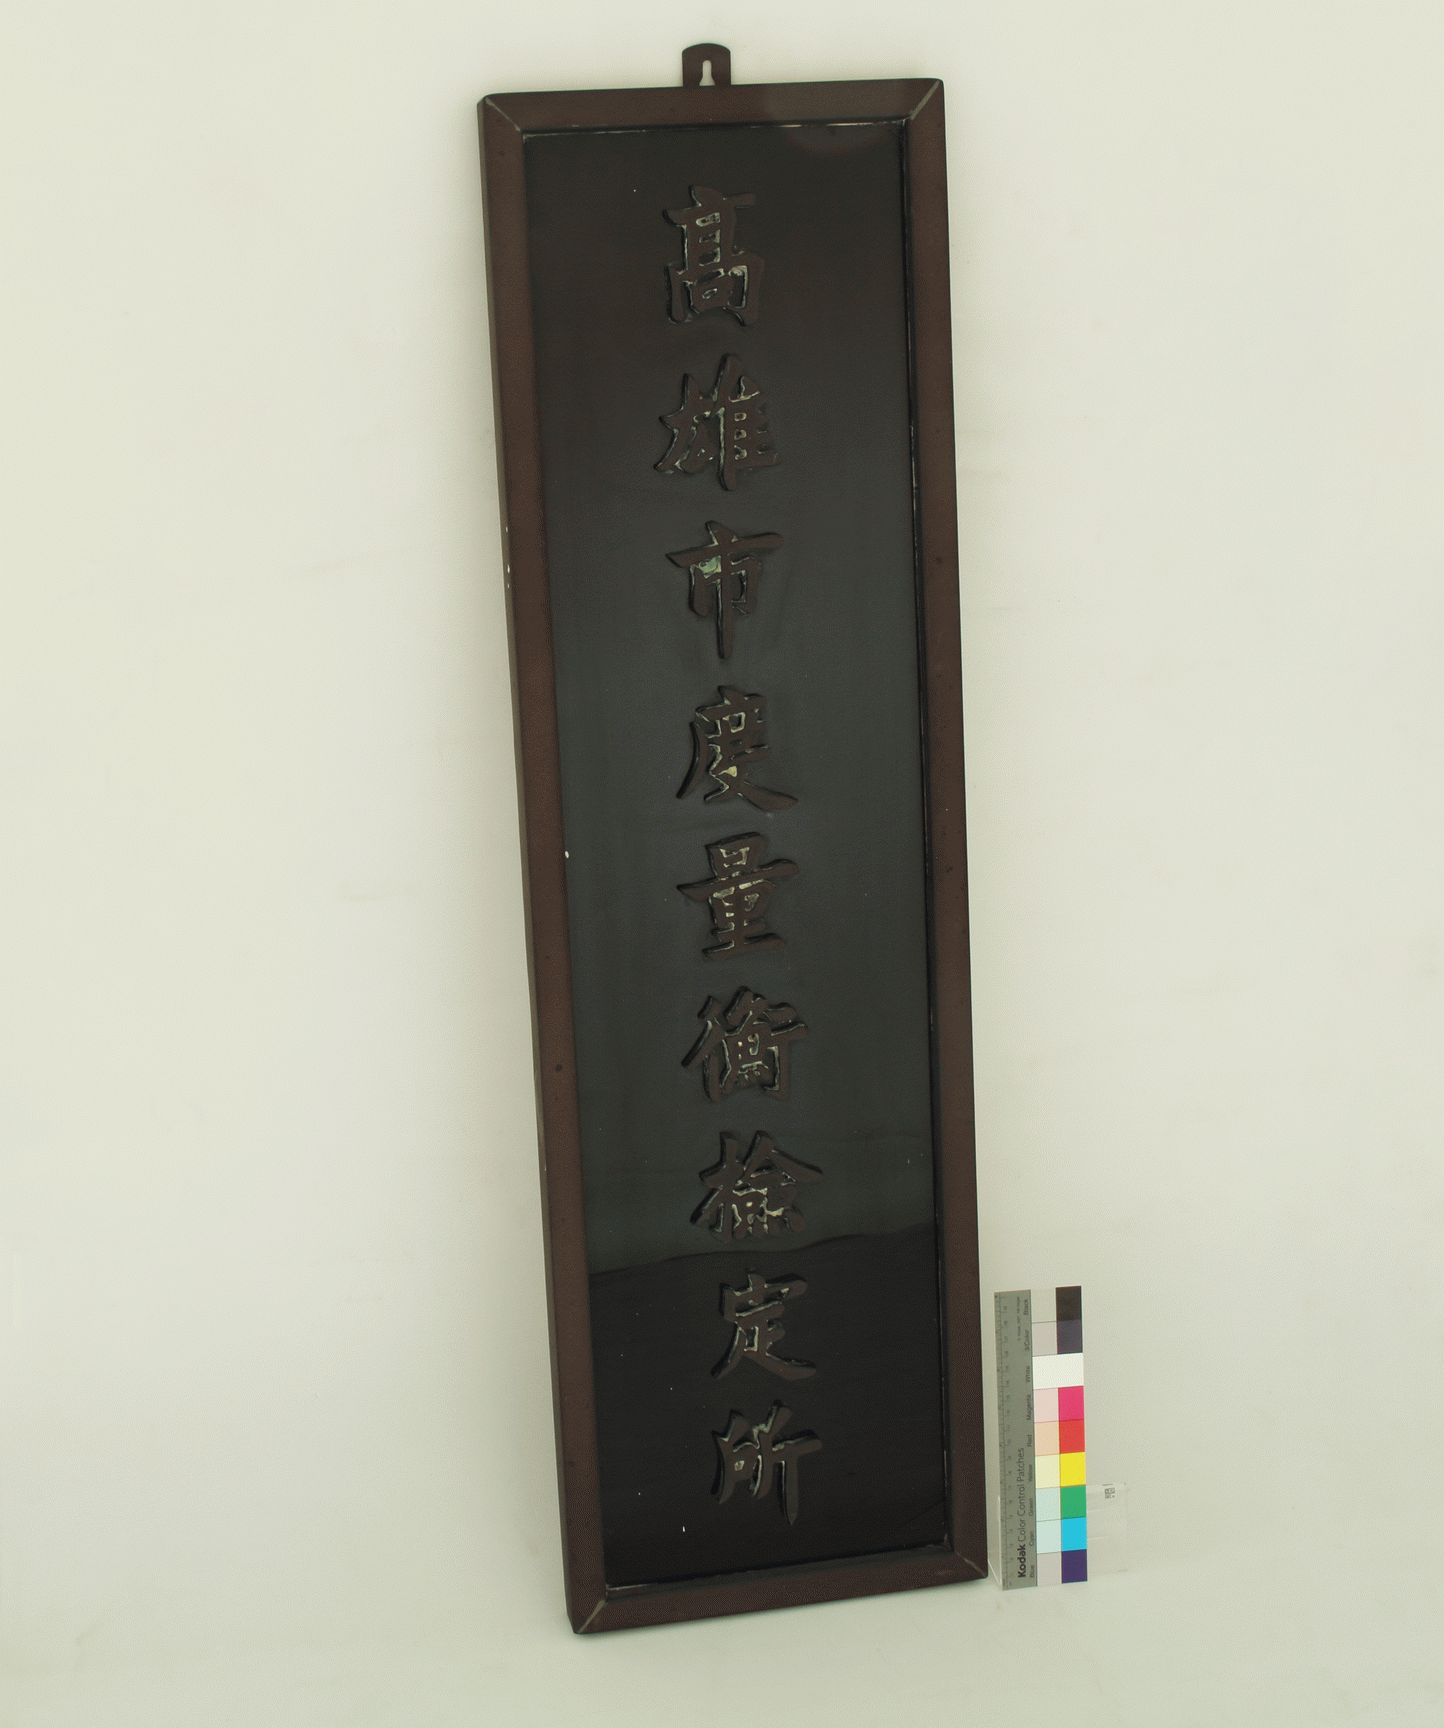 「高雄市度量衡檢定所」銅製銜牌,共0張圖片